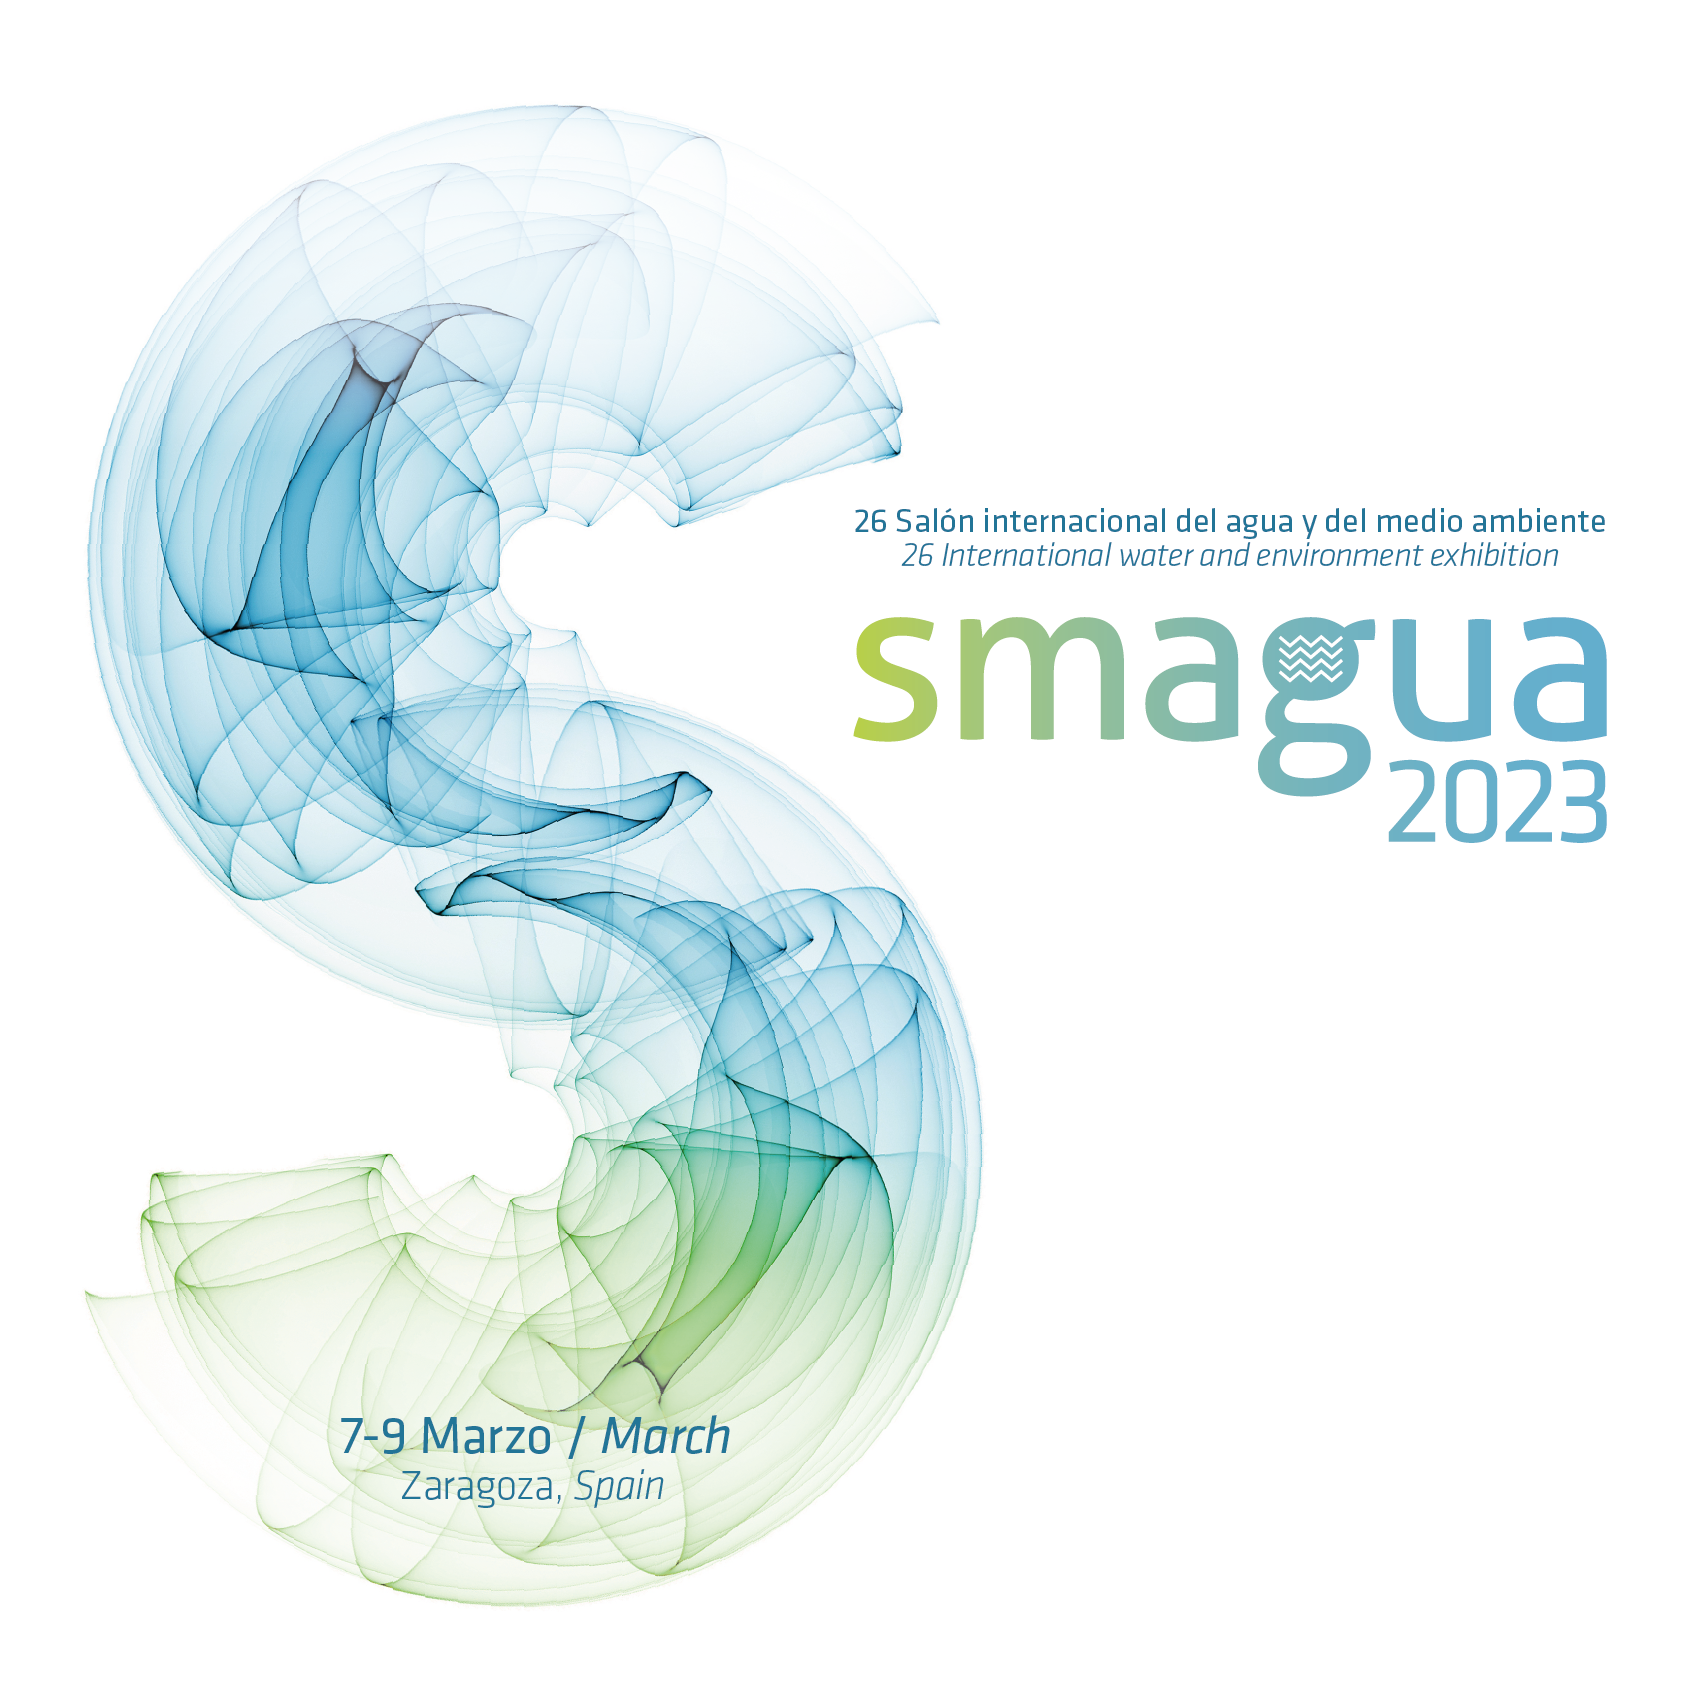 AEAS organiza tres jornadas técnicas los días 7, 8 y 9 de marzo dentro de SMAGUA 2023